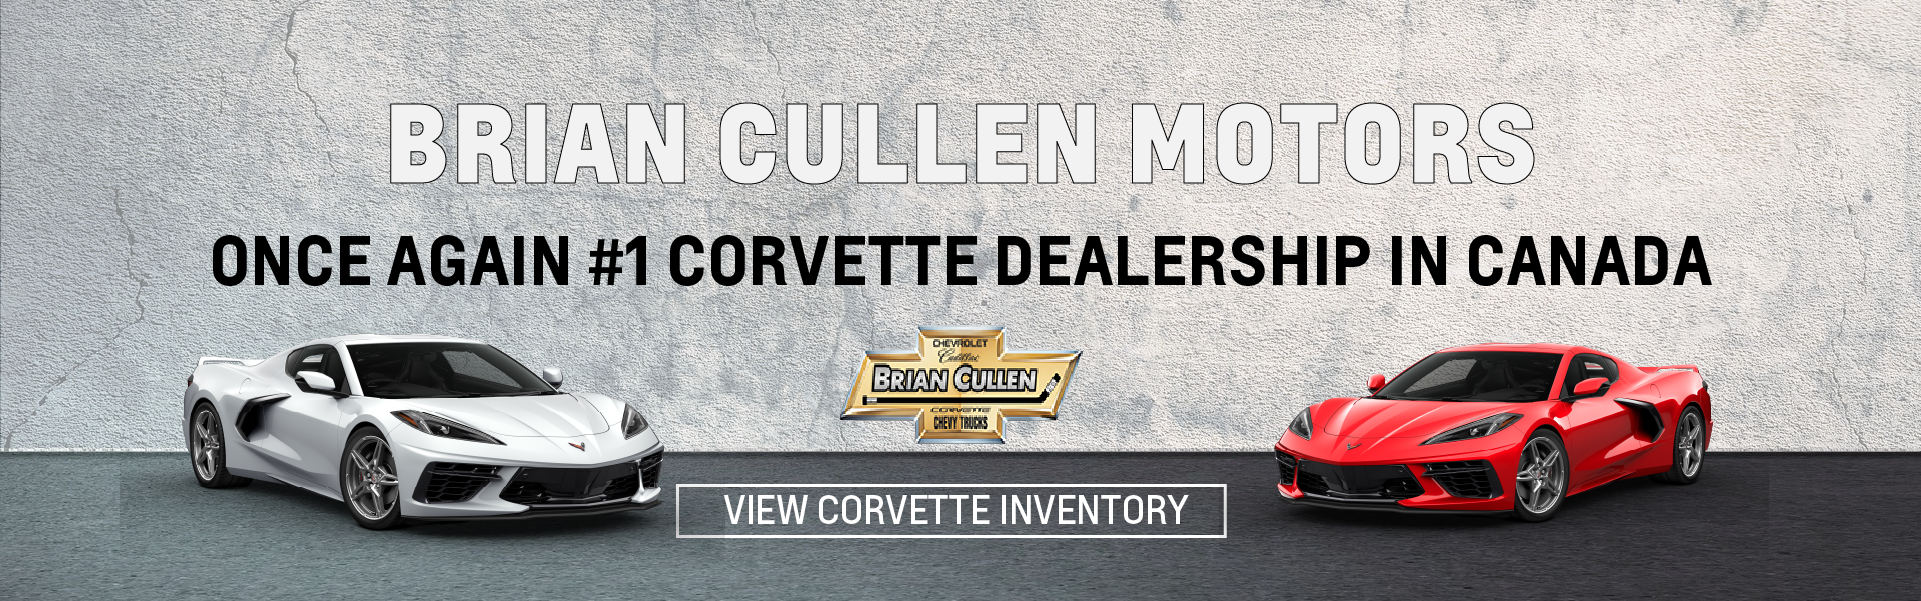 #1 Corvette Dealer Brian Cullen